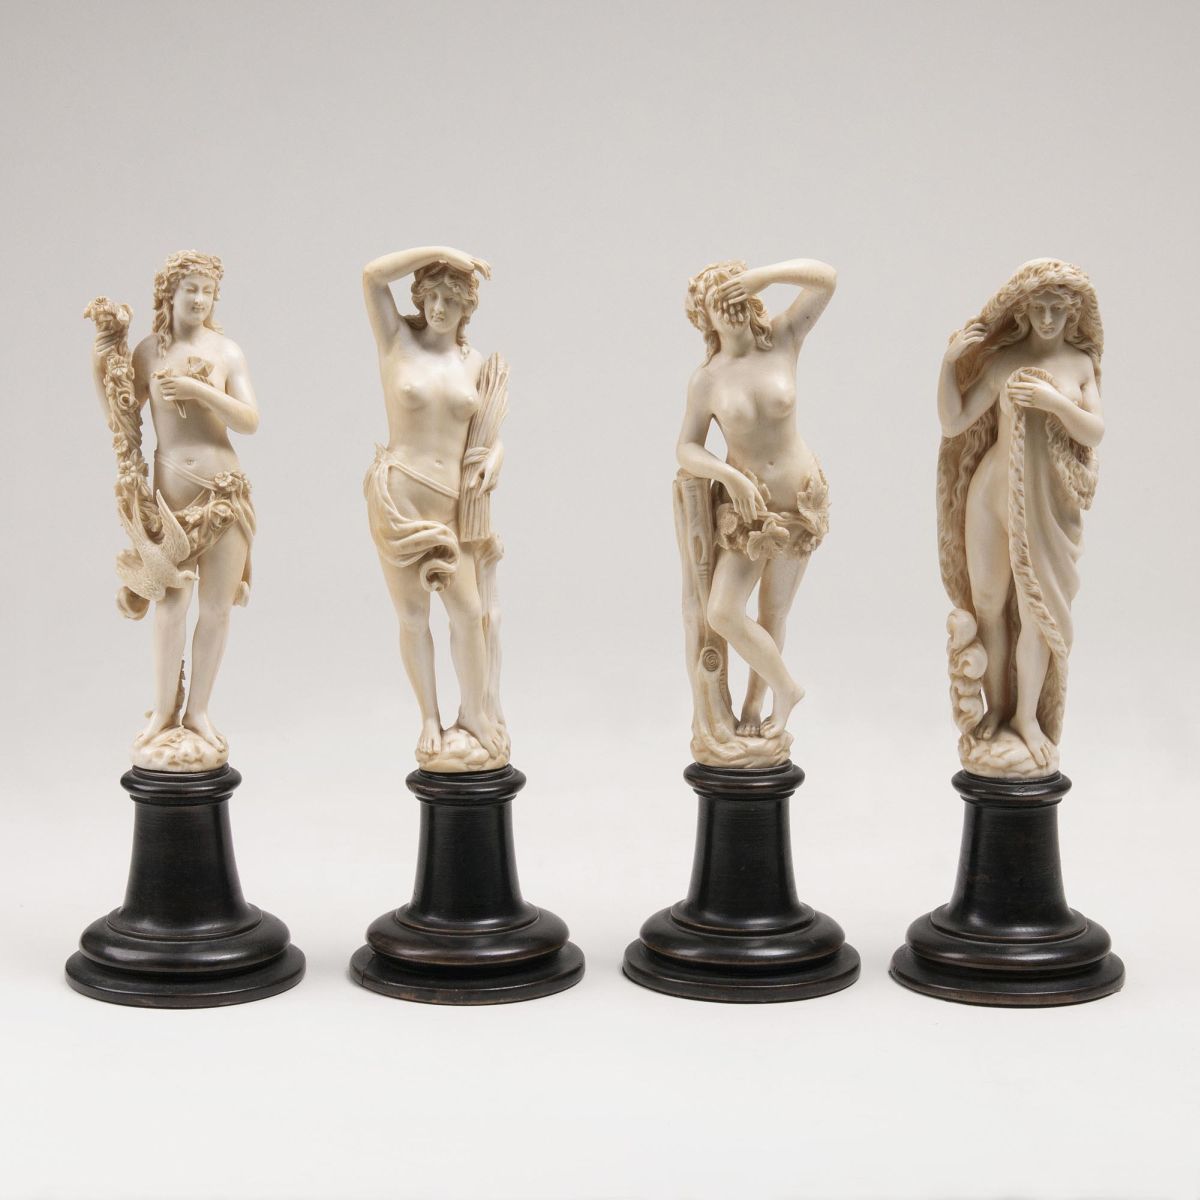 A Set of Four Ivory Figurines 'Four Seasons'